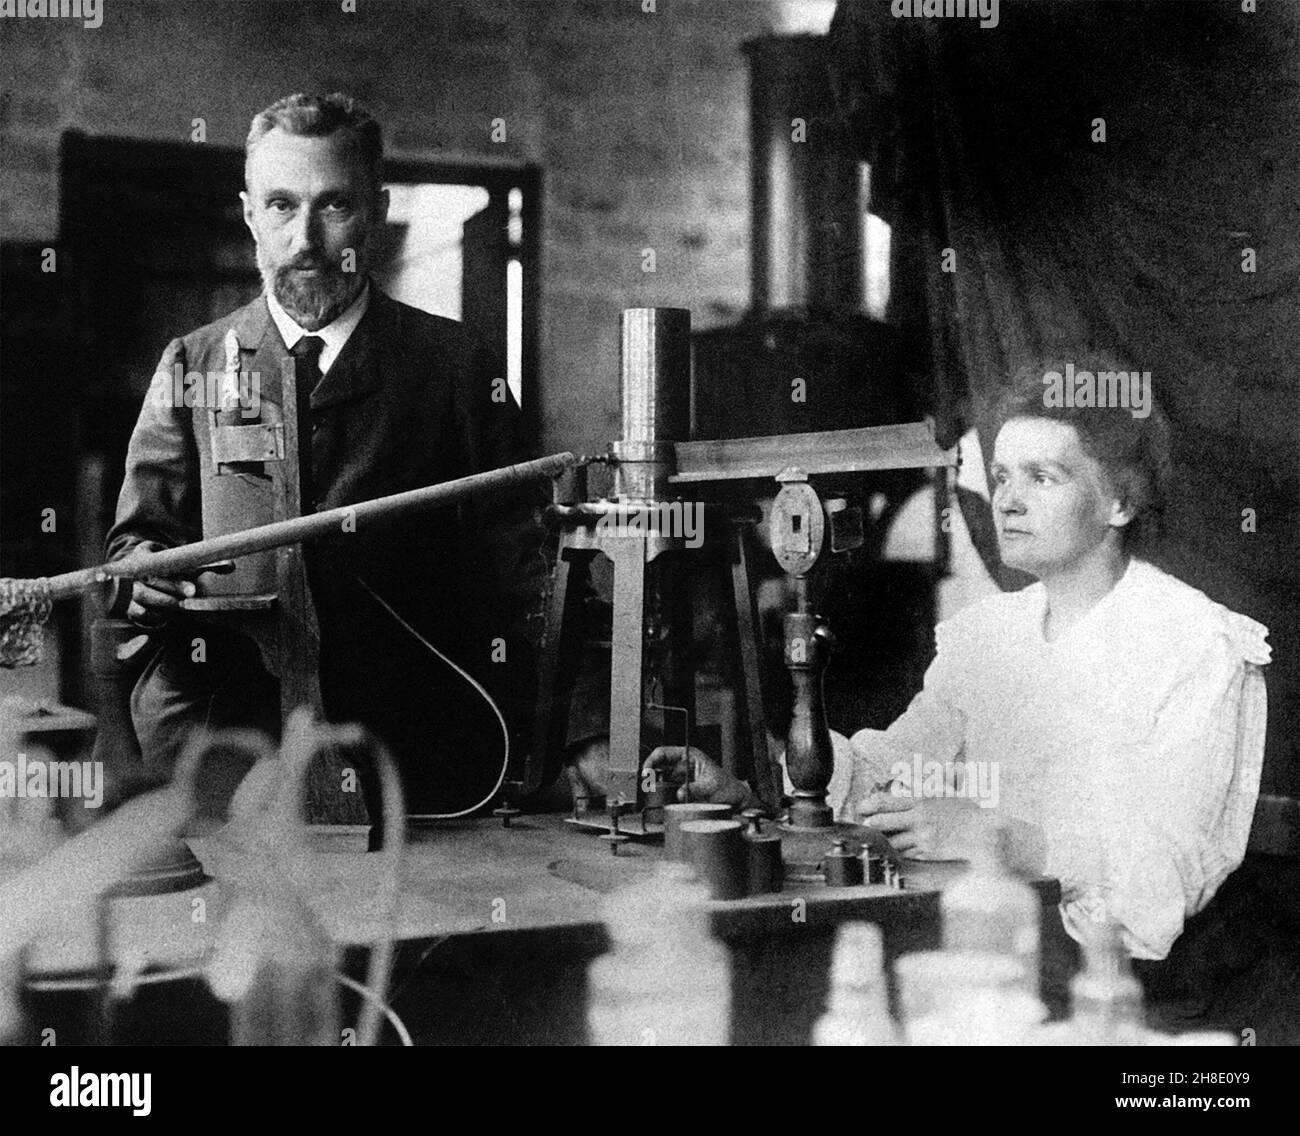 Pierre und Marie Curie. Die Nobelpreisträgerin Marie Skłodowska Curie (1867-1934) und ihr Mann Pierre Curie (1859-1906) in ihrem Labor. Foto aufgenommen c. 1904 Stockfoto